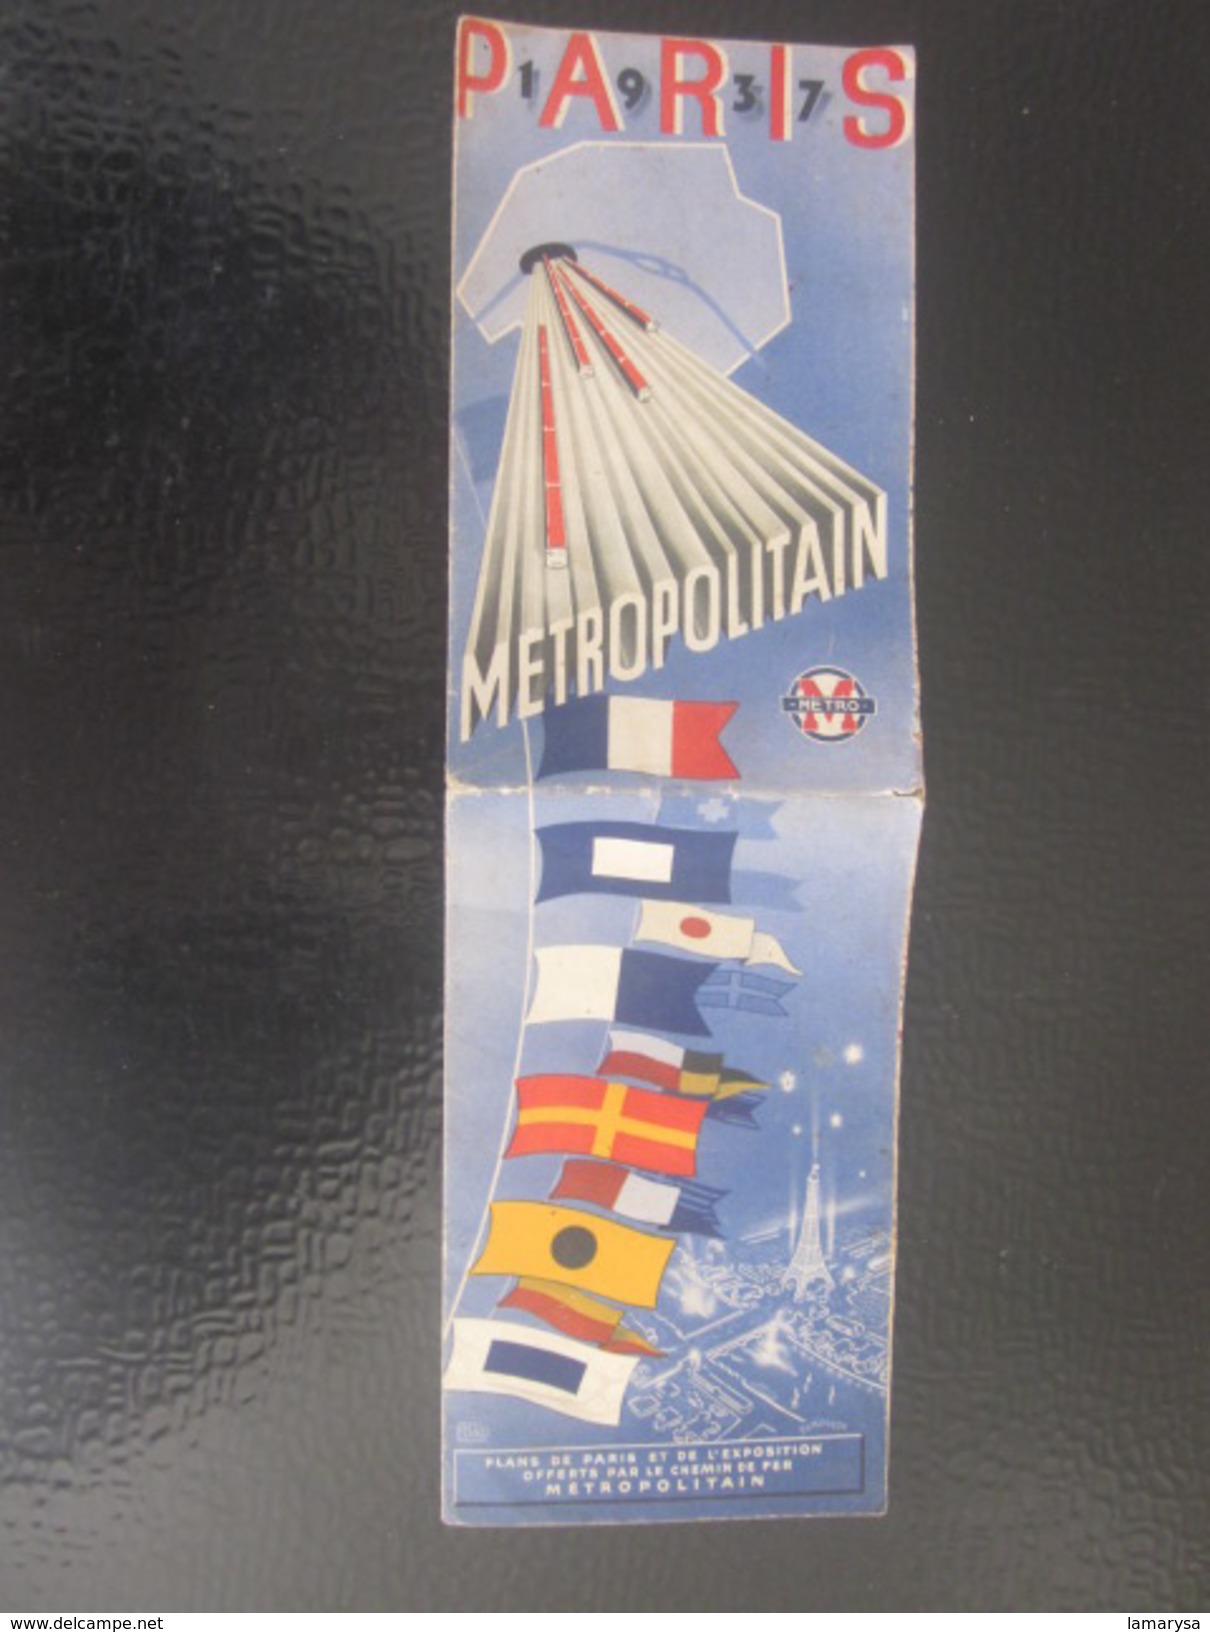 PARIS 1937 Métro Métropolitain Carte Plans de réseaux-Schémas de lignes -Stations Parisiennes légendes.Exposition avril